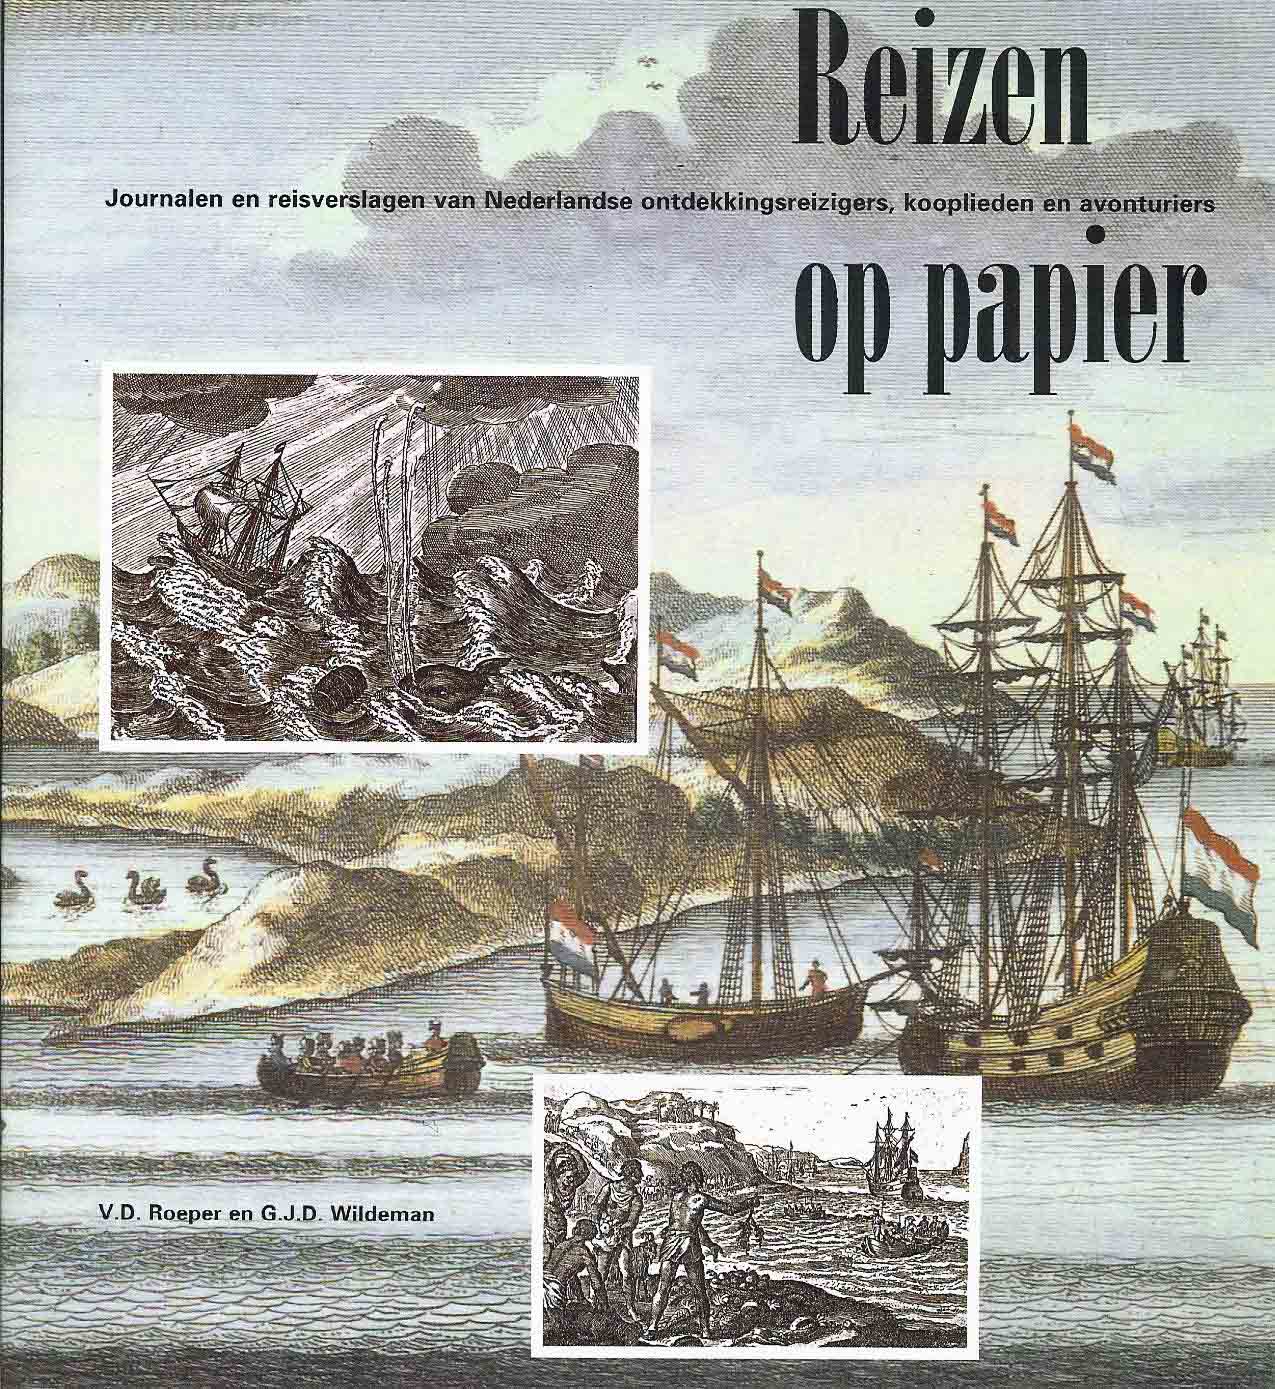 Roeper, V.D. & Wildeman, G.J.D. - Reizen op papier - Journalen en reisverslagen van Nederlandse ontdekkingsreizigers, kooplieden en avonturiers